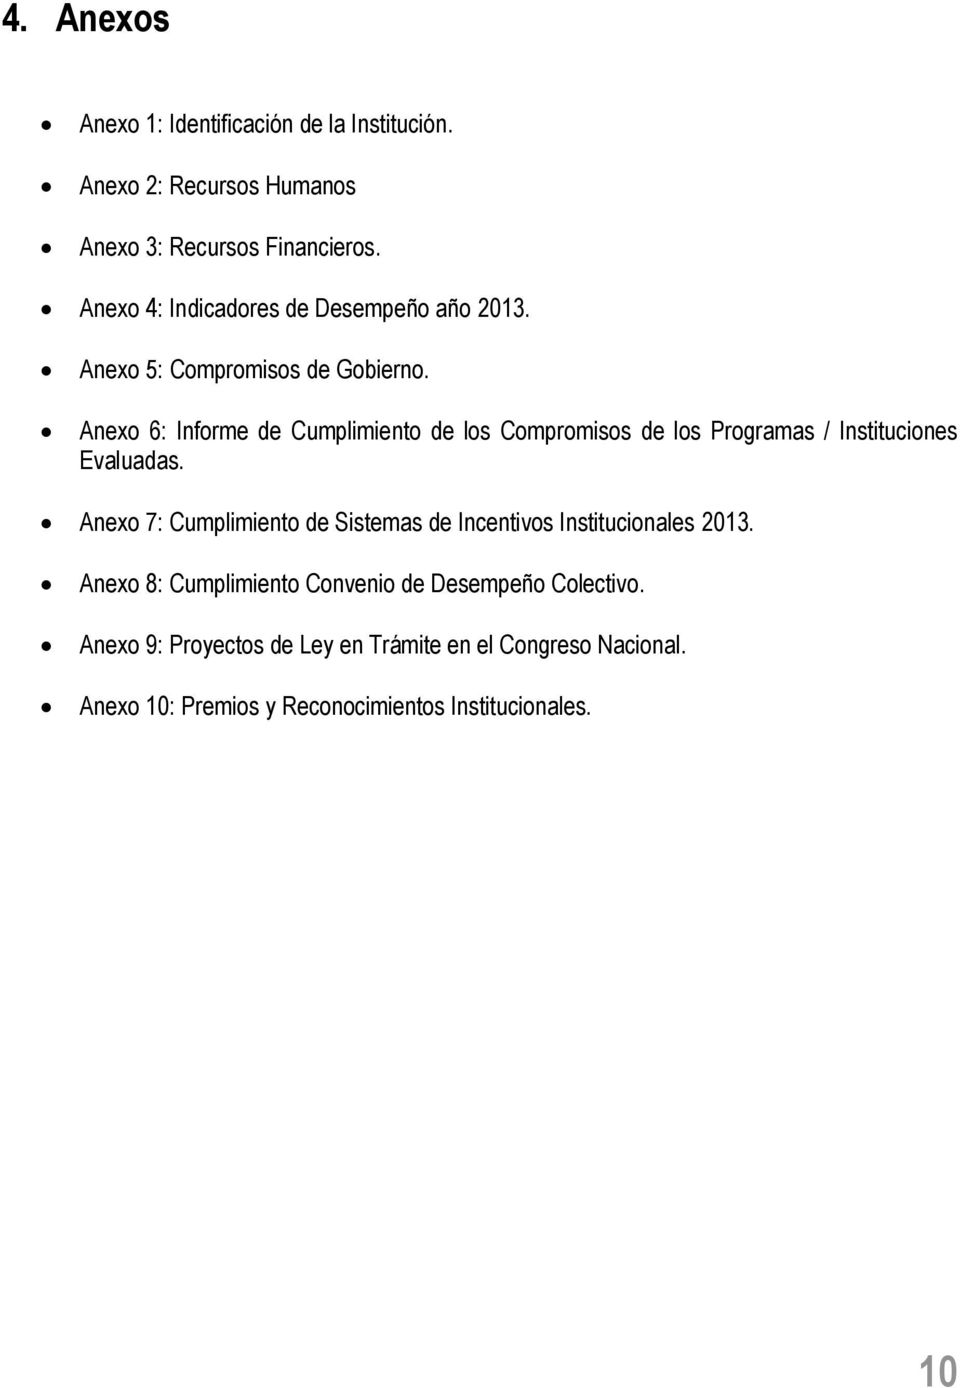 Anexo 6: Informe de Cumplimiento de los Compromisos de los Programas / Instituciones Evaluadas.